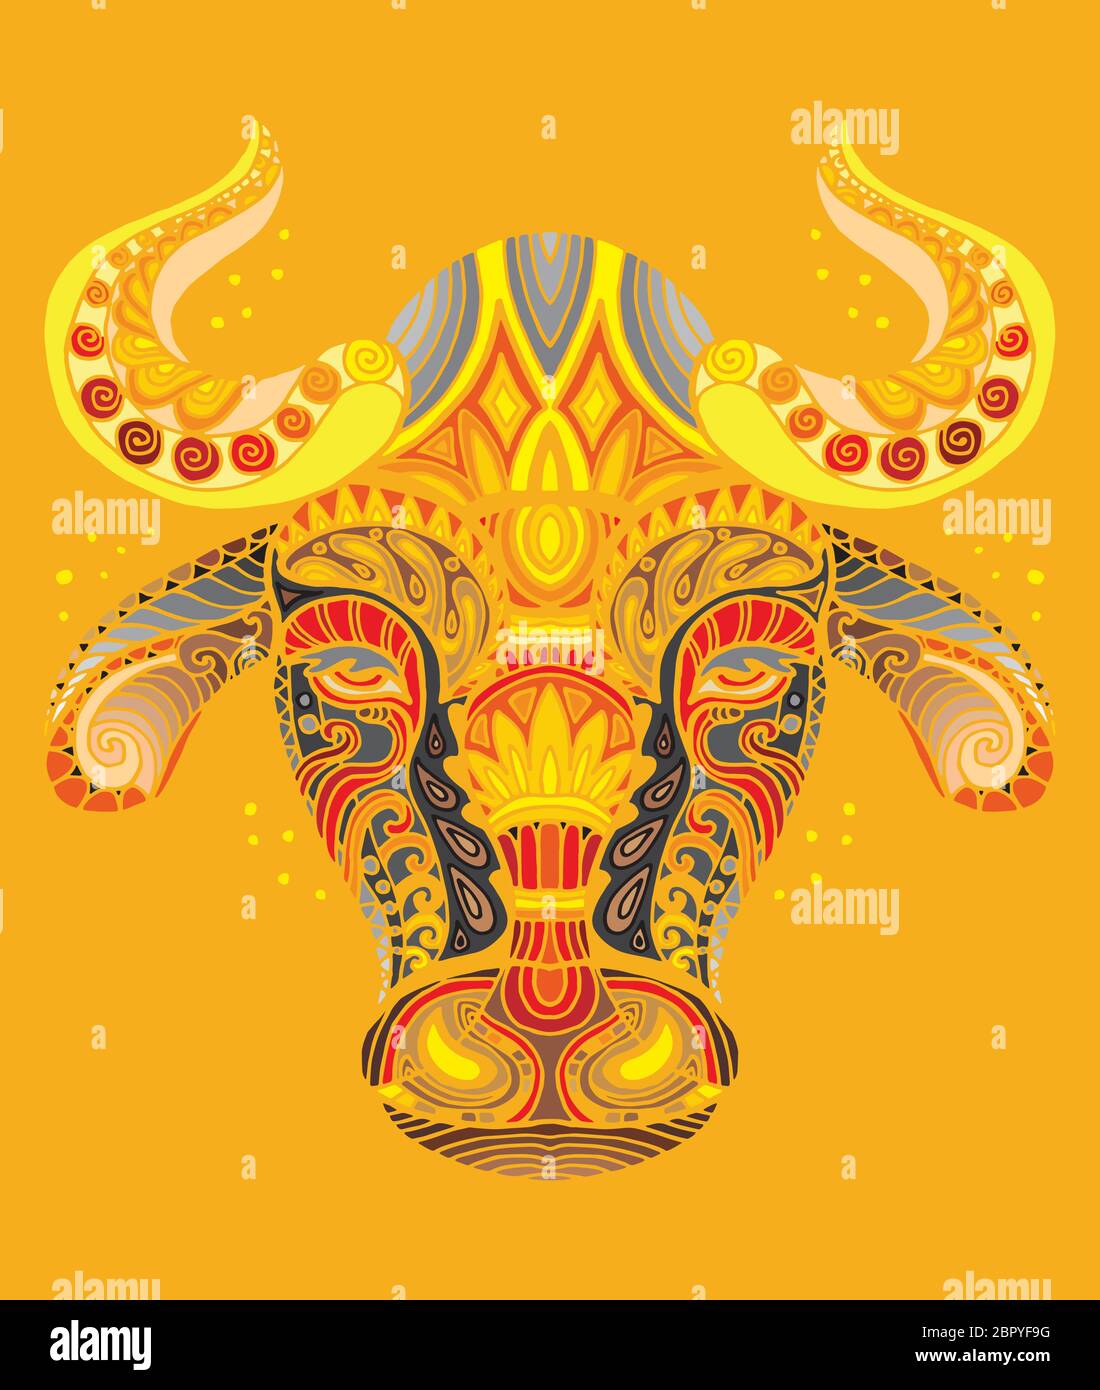 Vettore decorativo doodle testa ornamentale di toro. Vettore astratto colorato illustrazione della testa di toro isolato su sfondo arancione. Illustrazione delle scorte Illustrazione Vettoriale